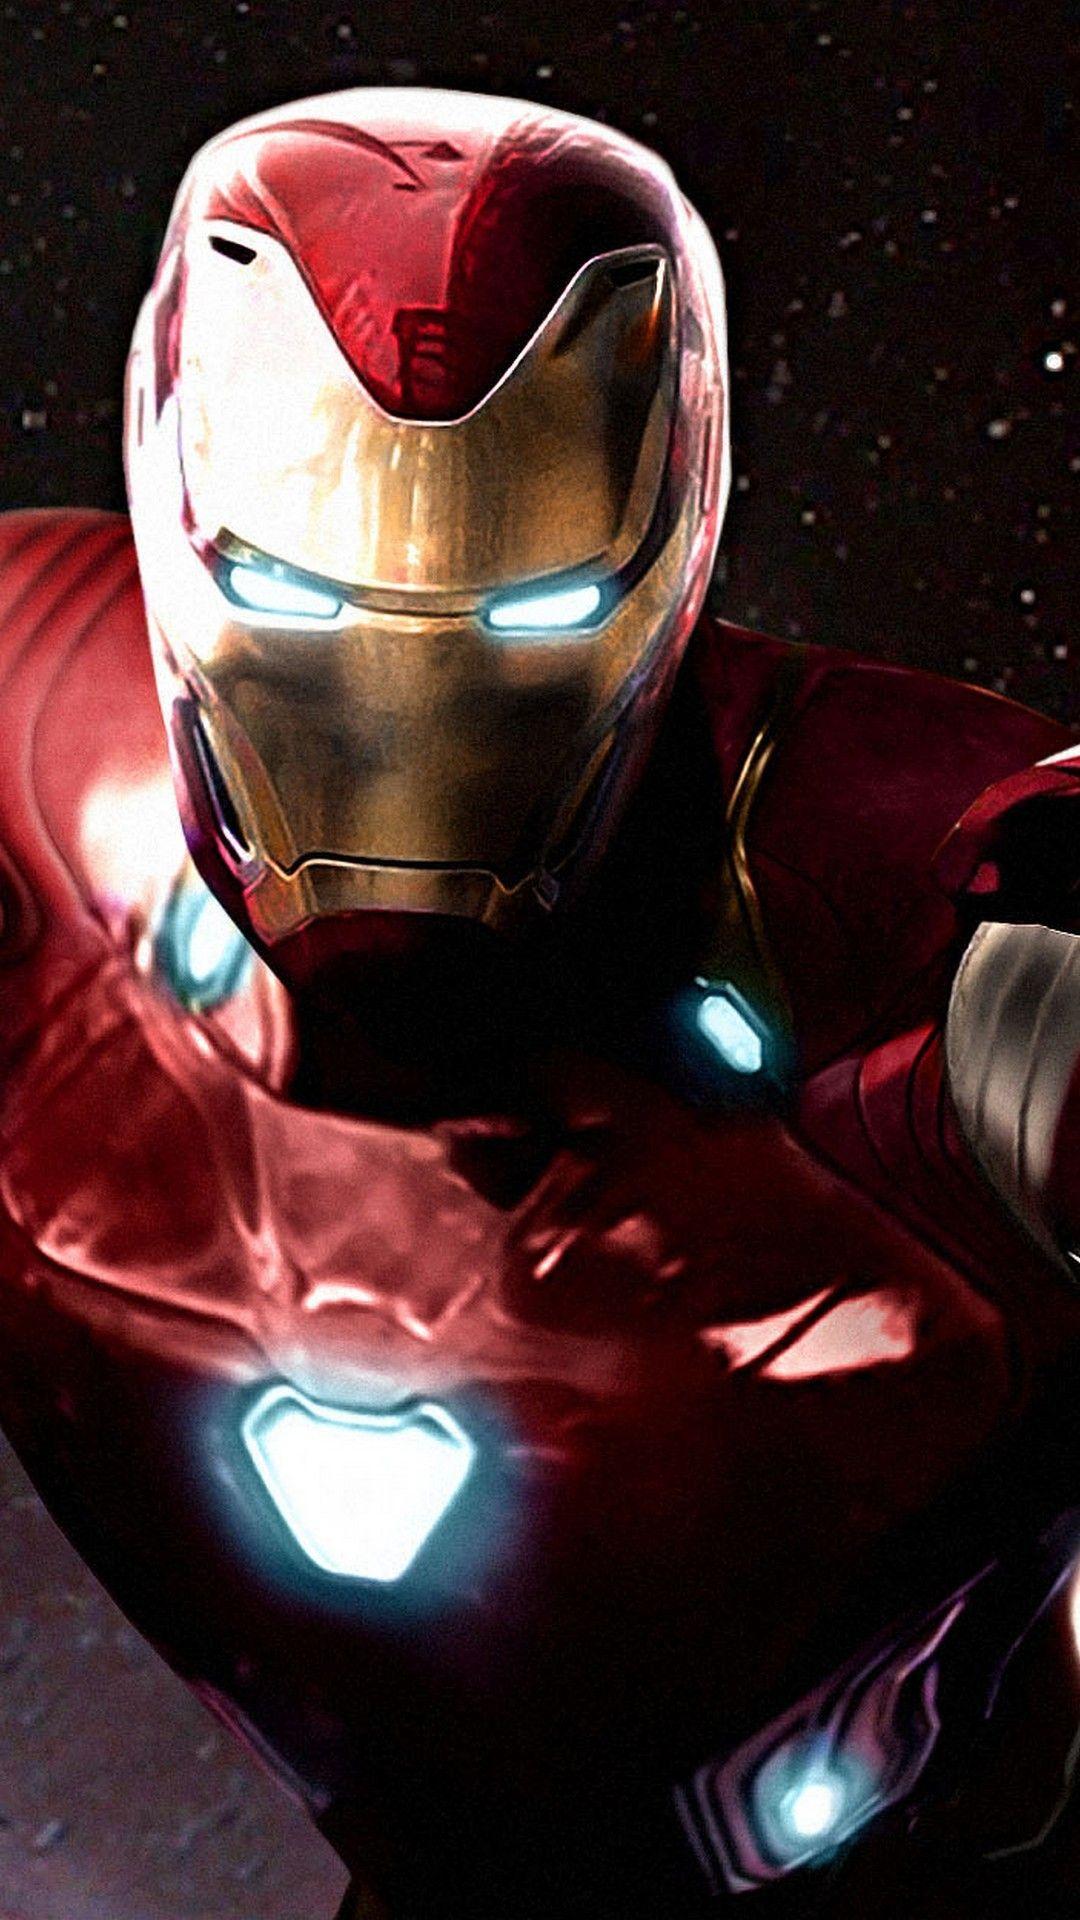 1080x1920 Iron Man Avengers Infinity War Hình Nền iPhone - Hình Nền iPhone 2018